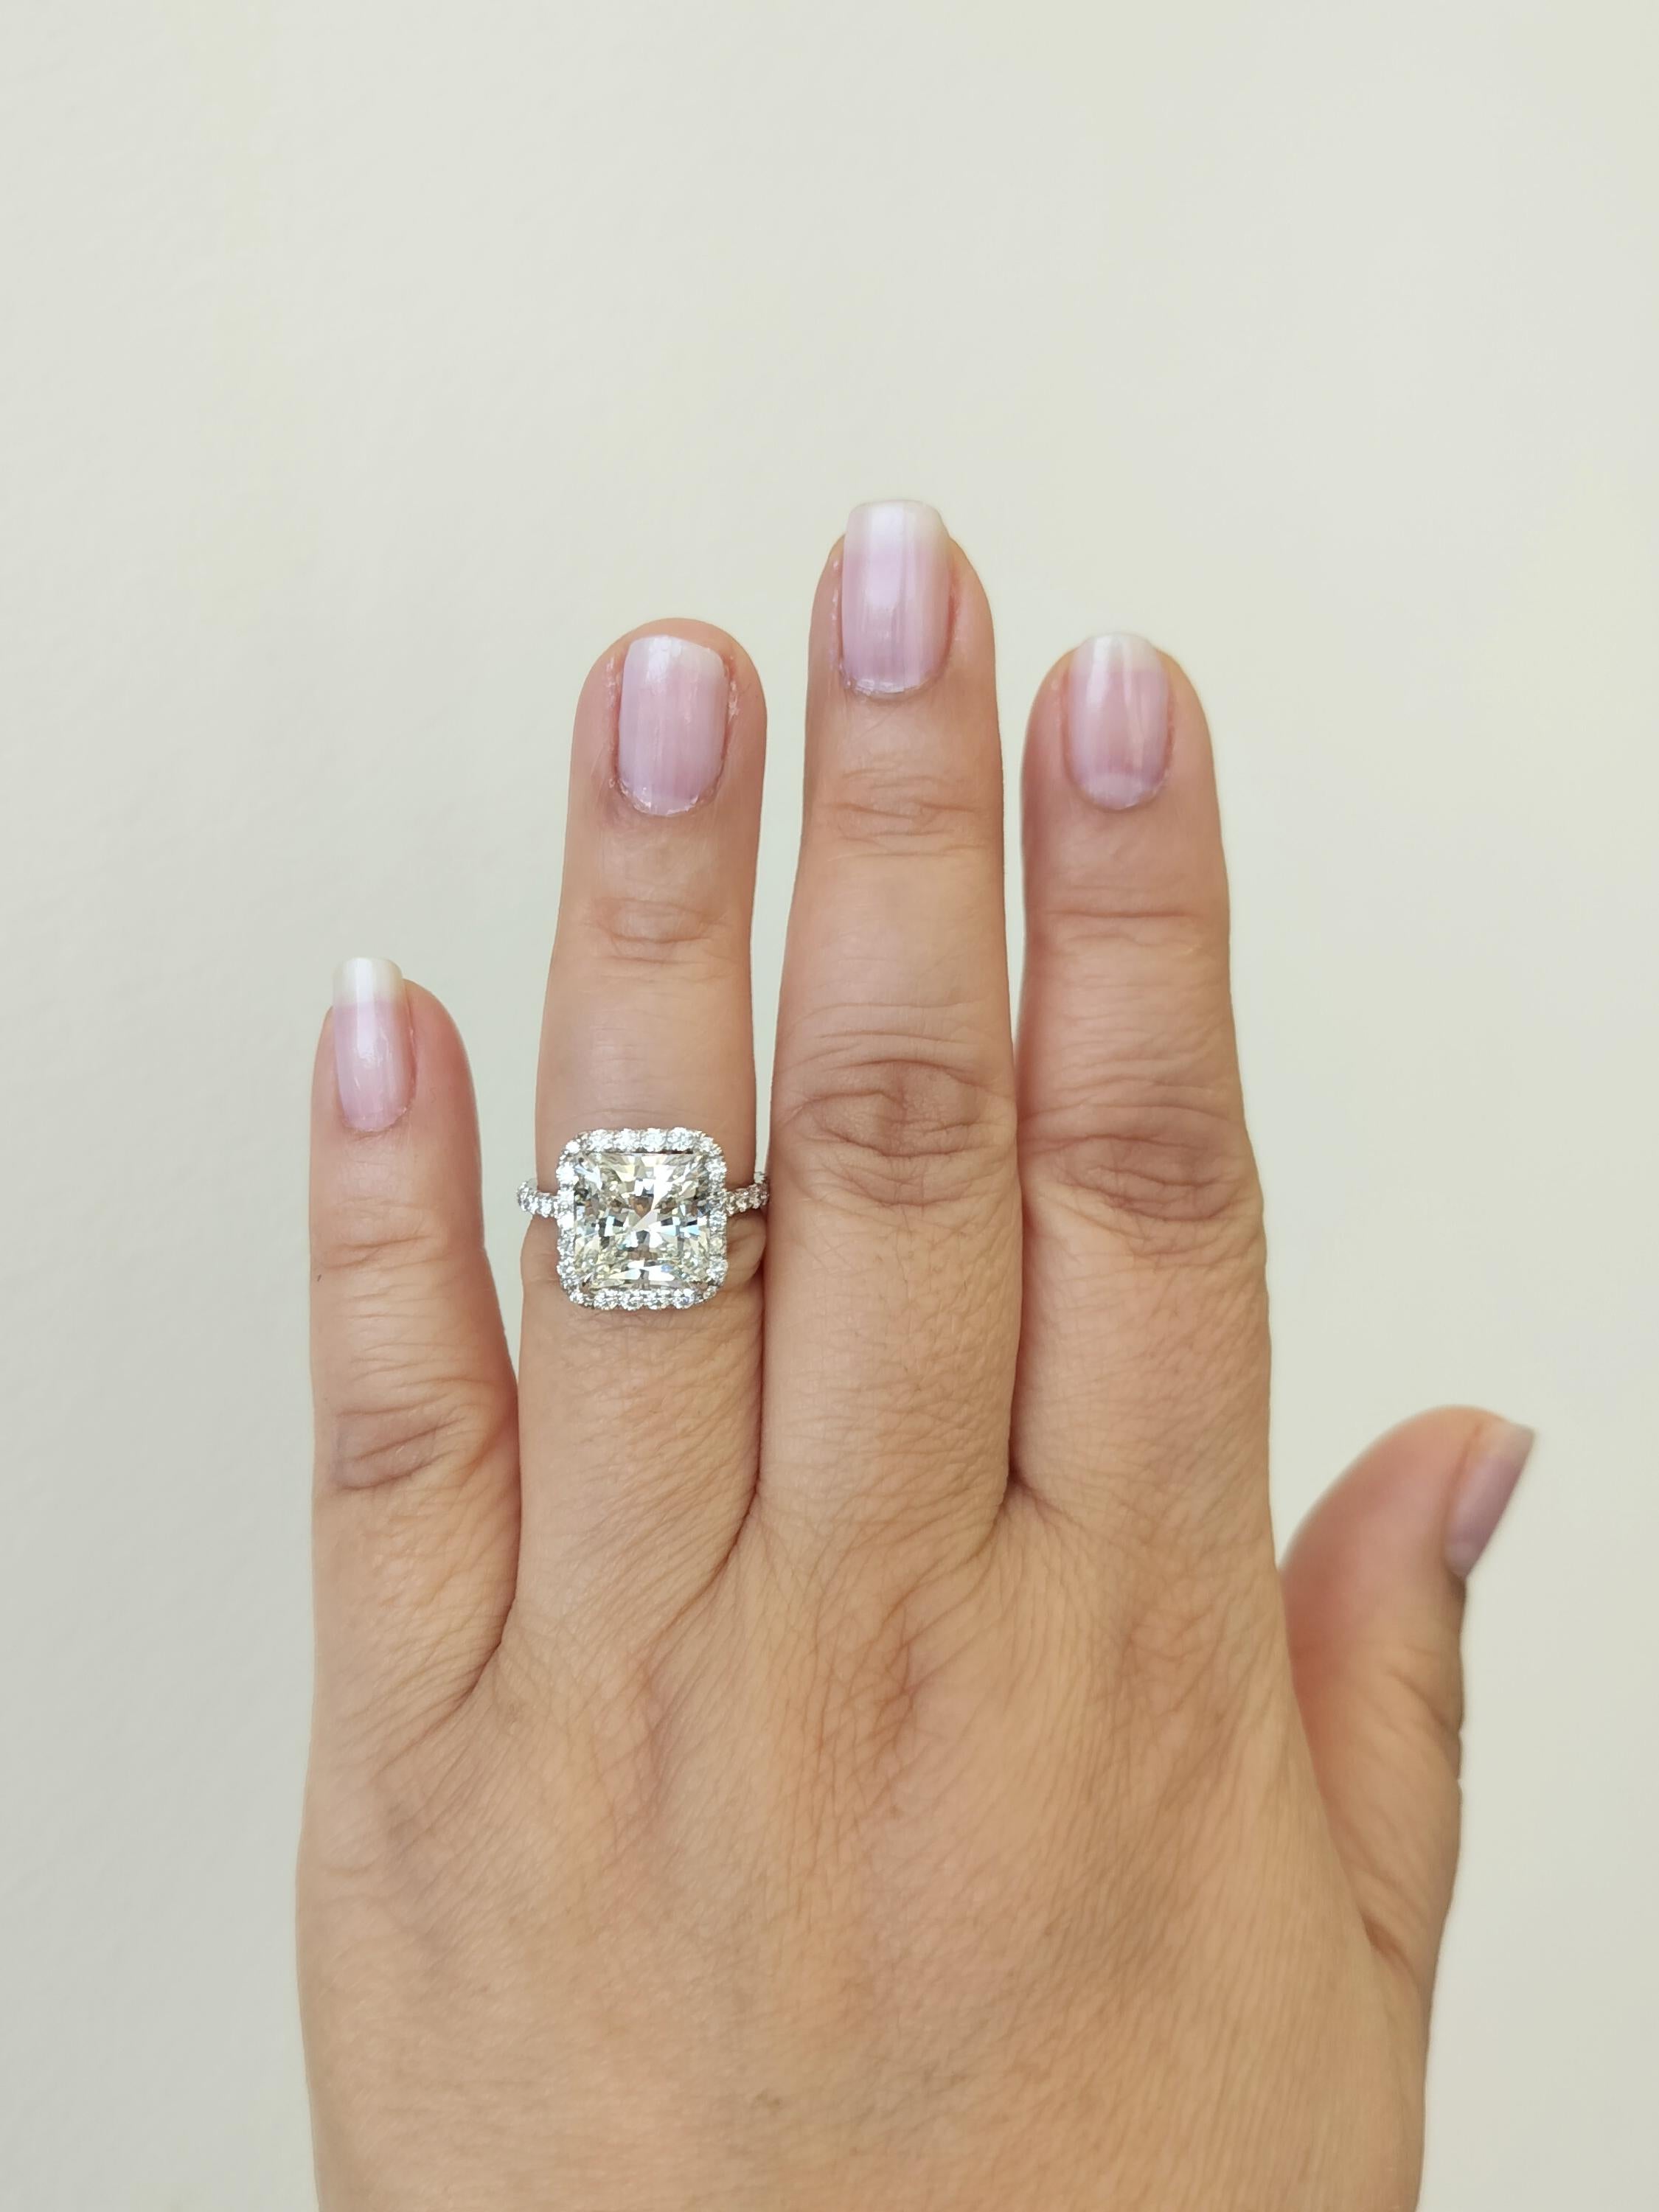 Magnifique 5,27 ct. GIA I VS2 diamant blanc taille radiant avec des diamants blancs ronds de bonne qualité.  Fabriqué à la main en or blanc 18 carats.  Bague taille 7.  Le certificat GIA est inclus.